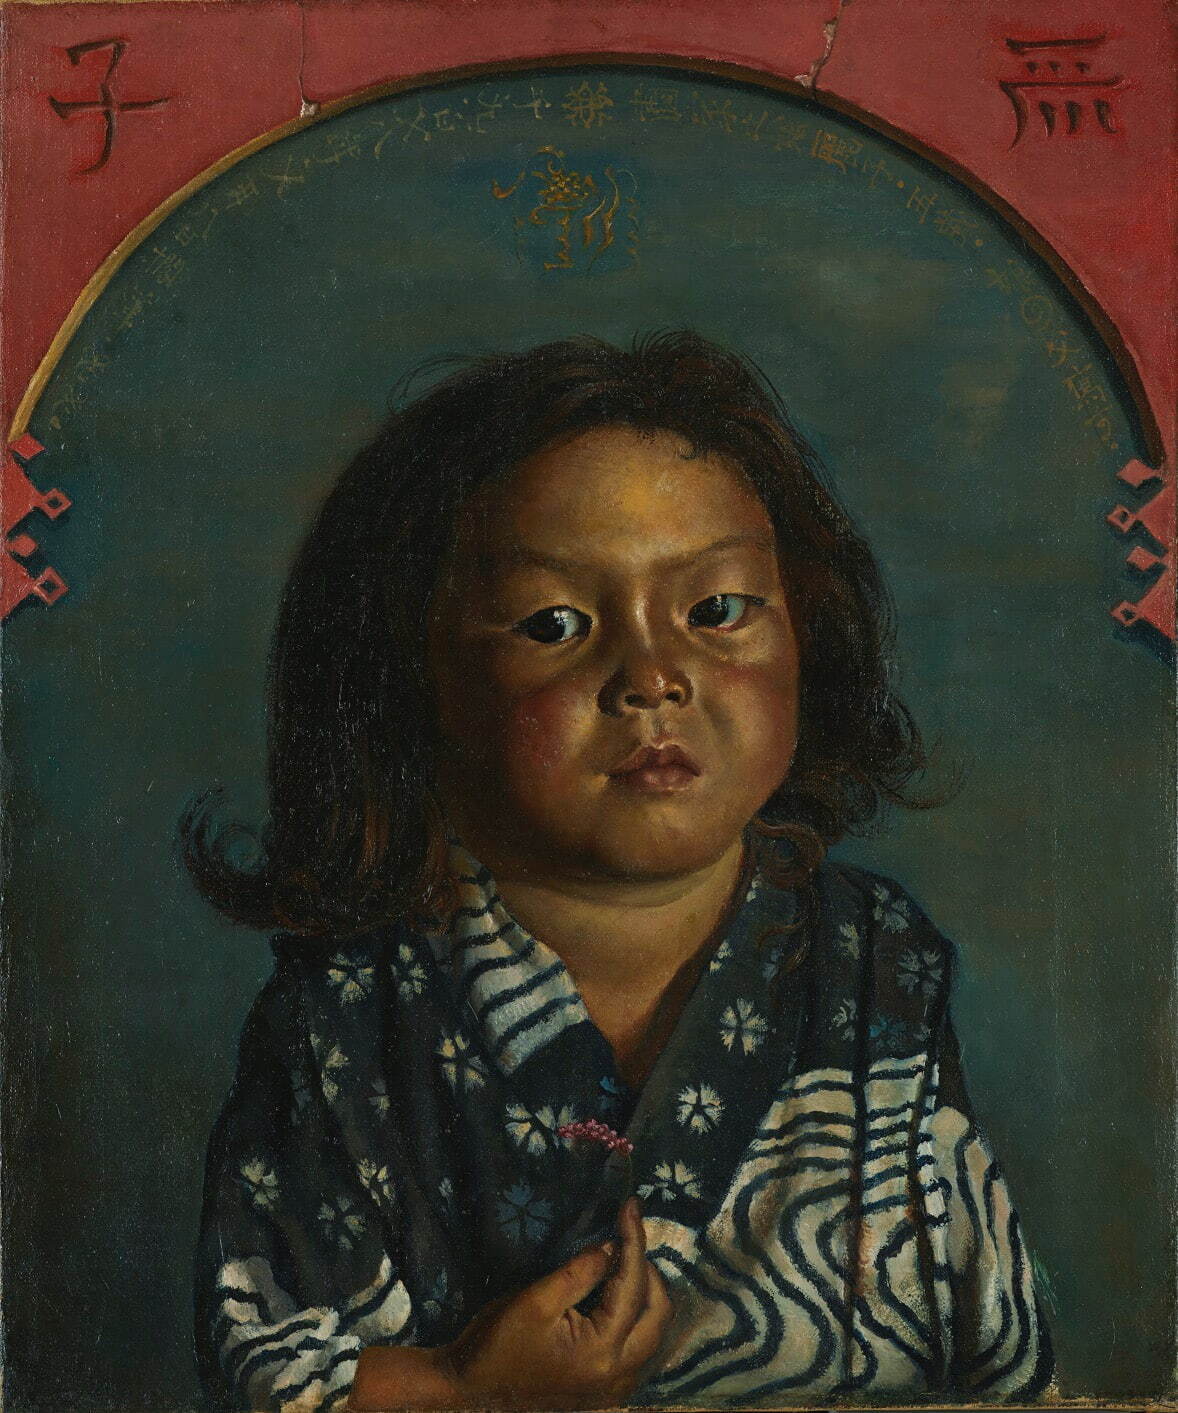 岸田劉生 《麗子肖像(麗子五歳之像)》
1918年 油彩・キャンバス 東京国立近代美術館蔵